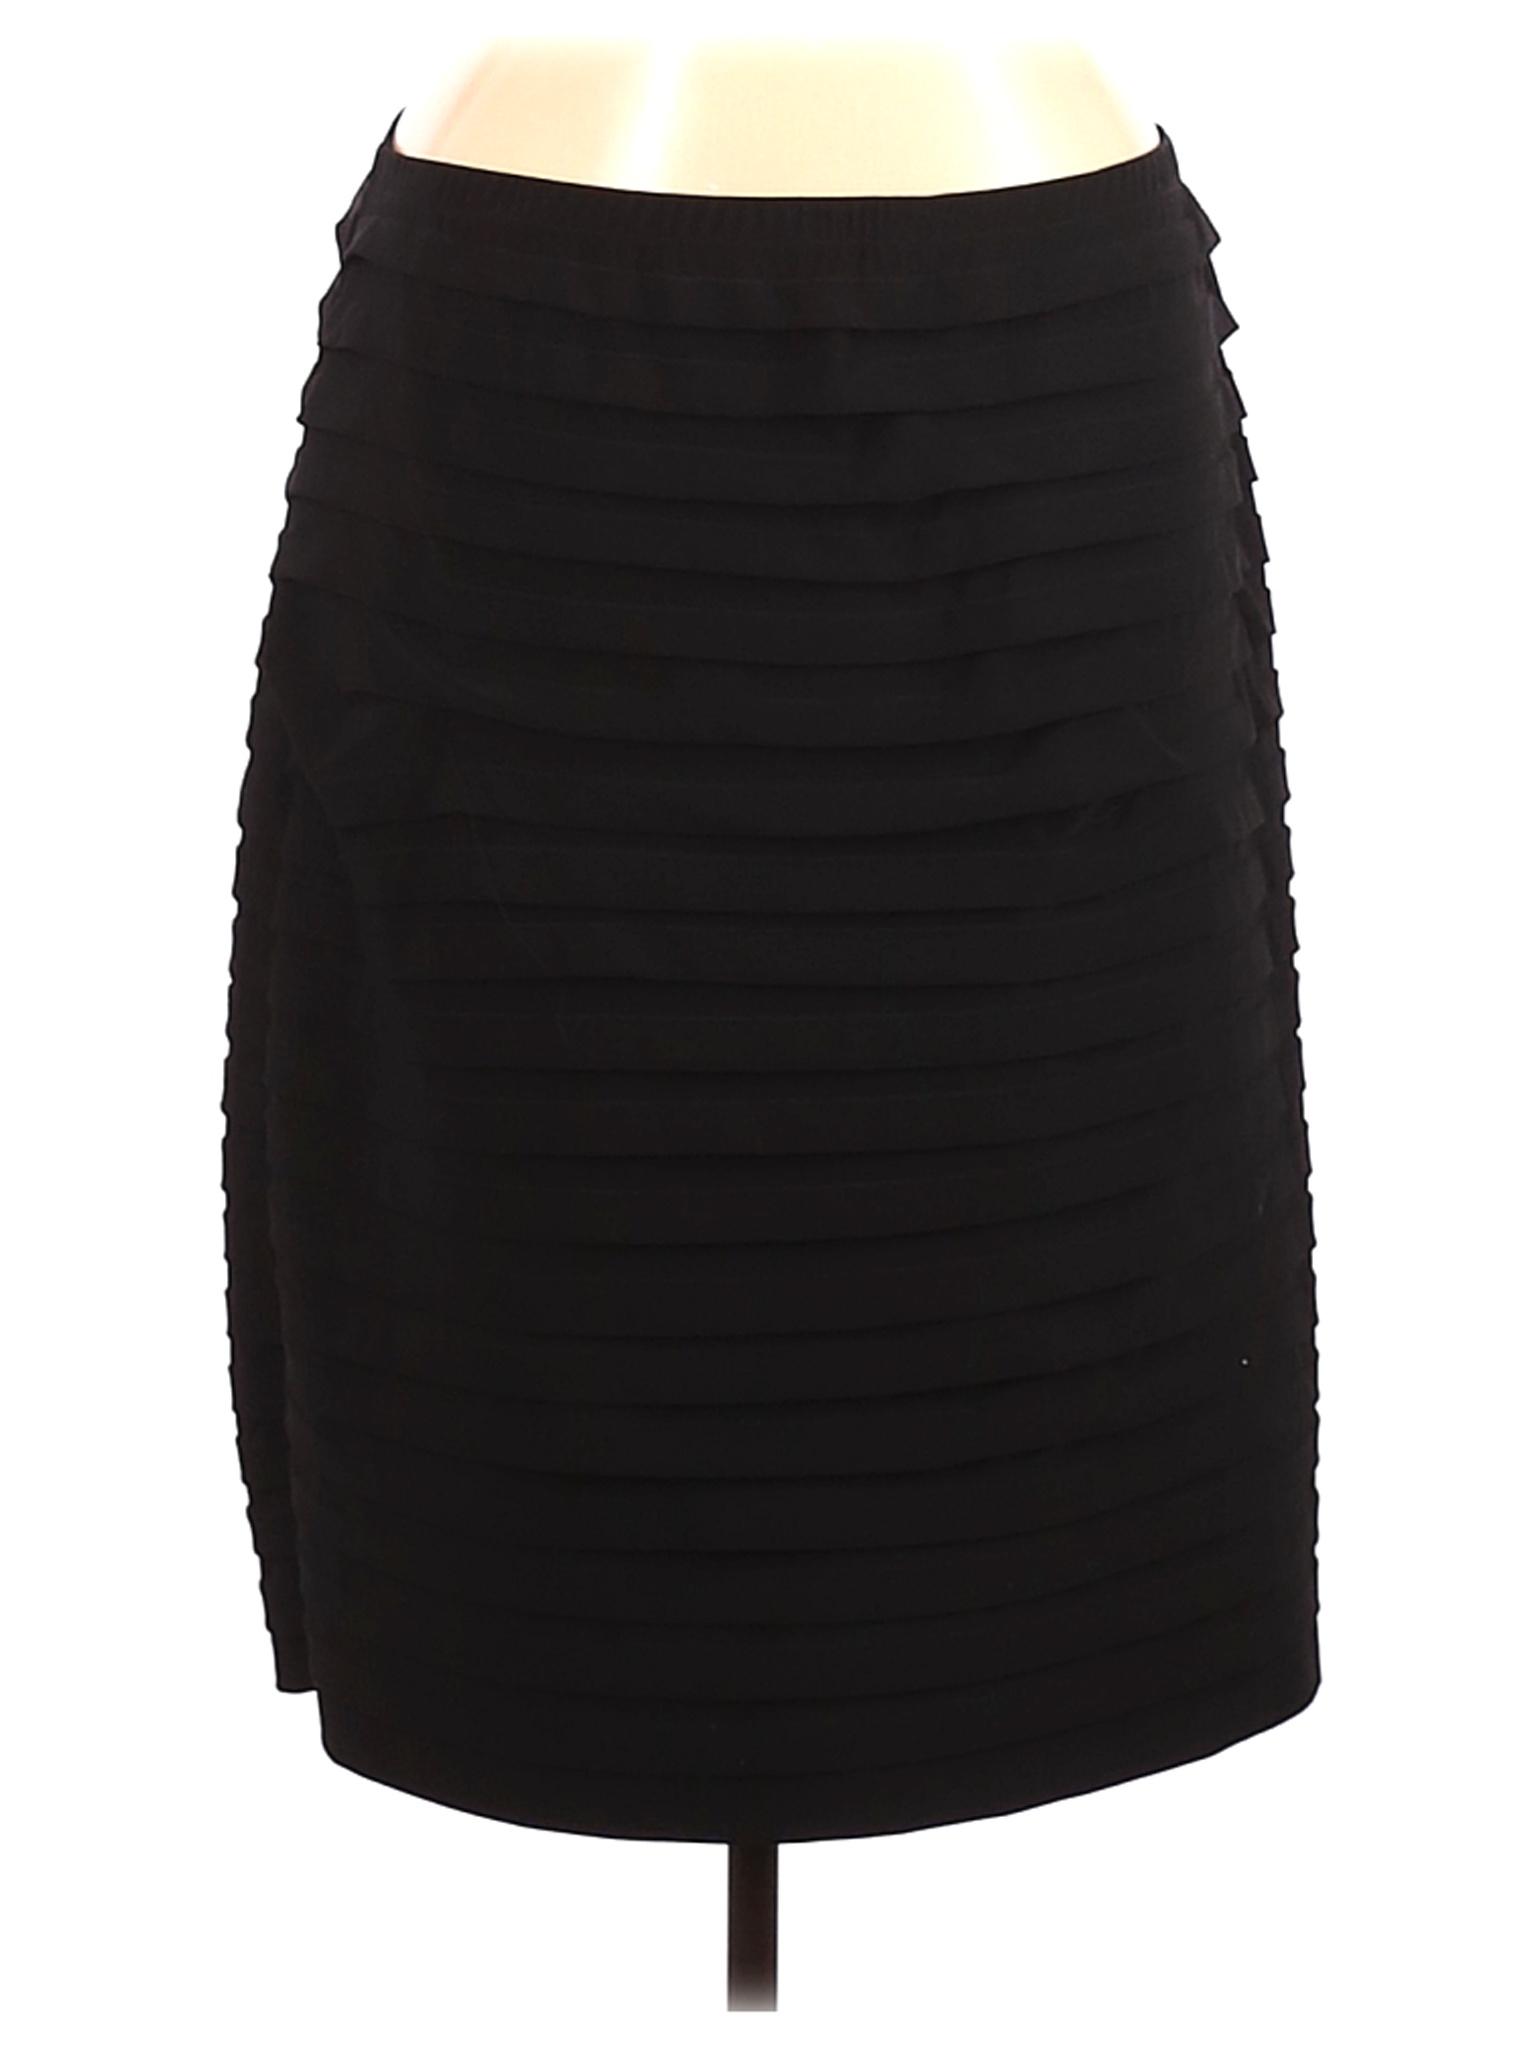 DressBarn Women Black Formal Skirt 20 Plus | eBay